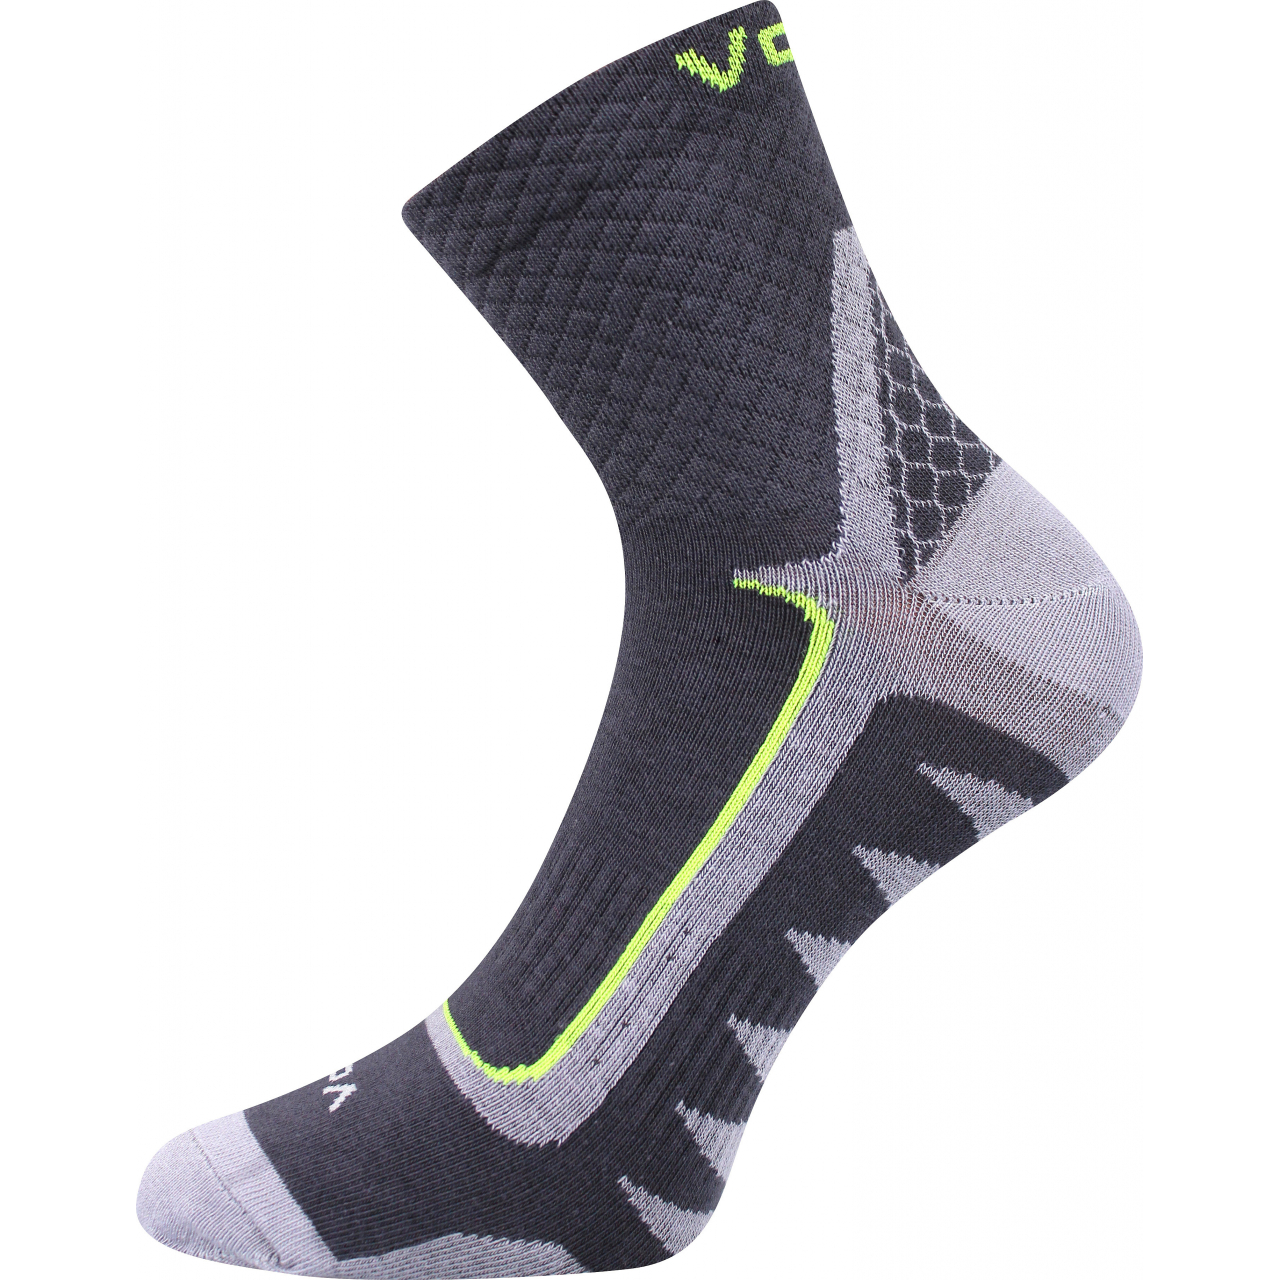 Ponožky sportovní unisex Voxx Kryptox - šedé-žluté, 35-38